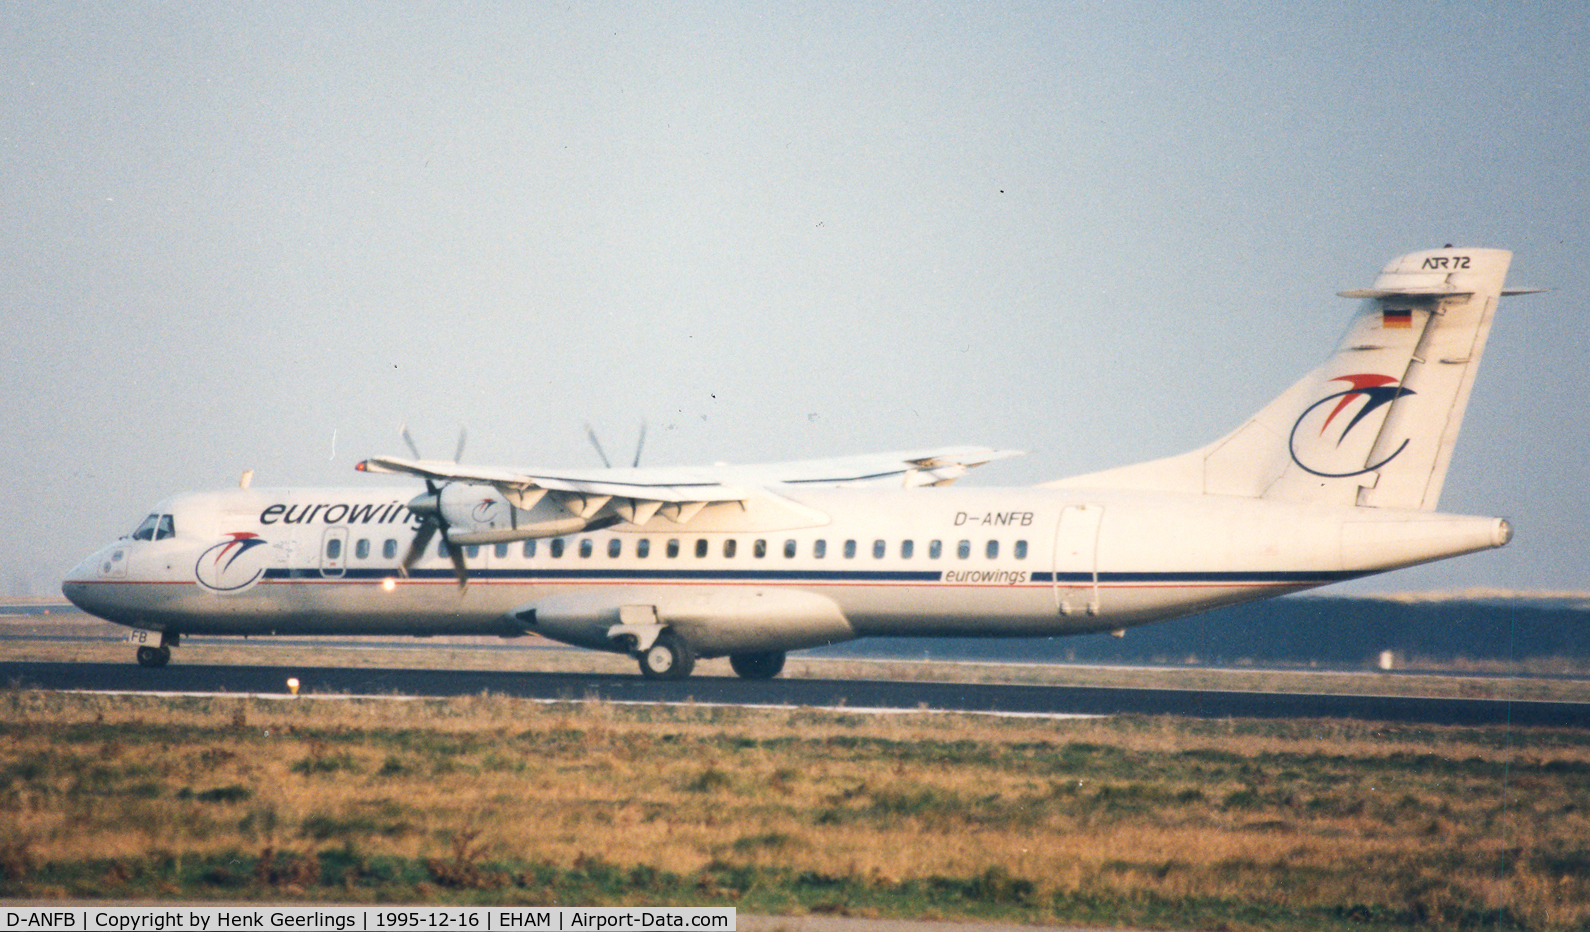 D-ANFB, 1991 ATR 72-202 C/N 229, Eurowings